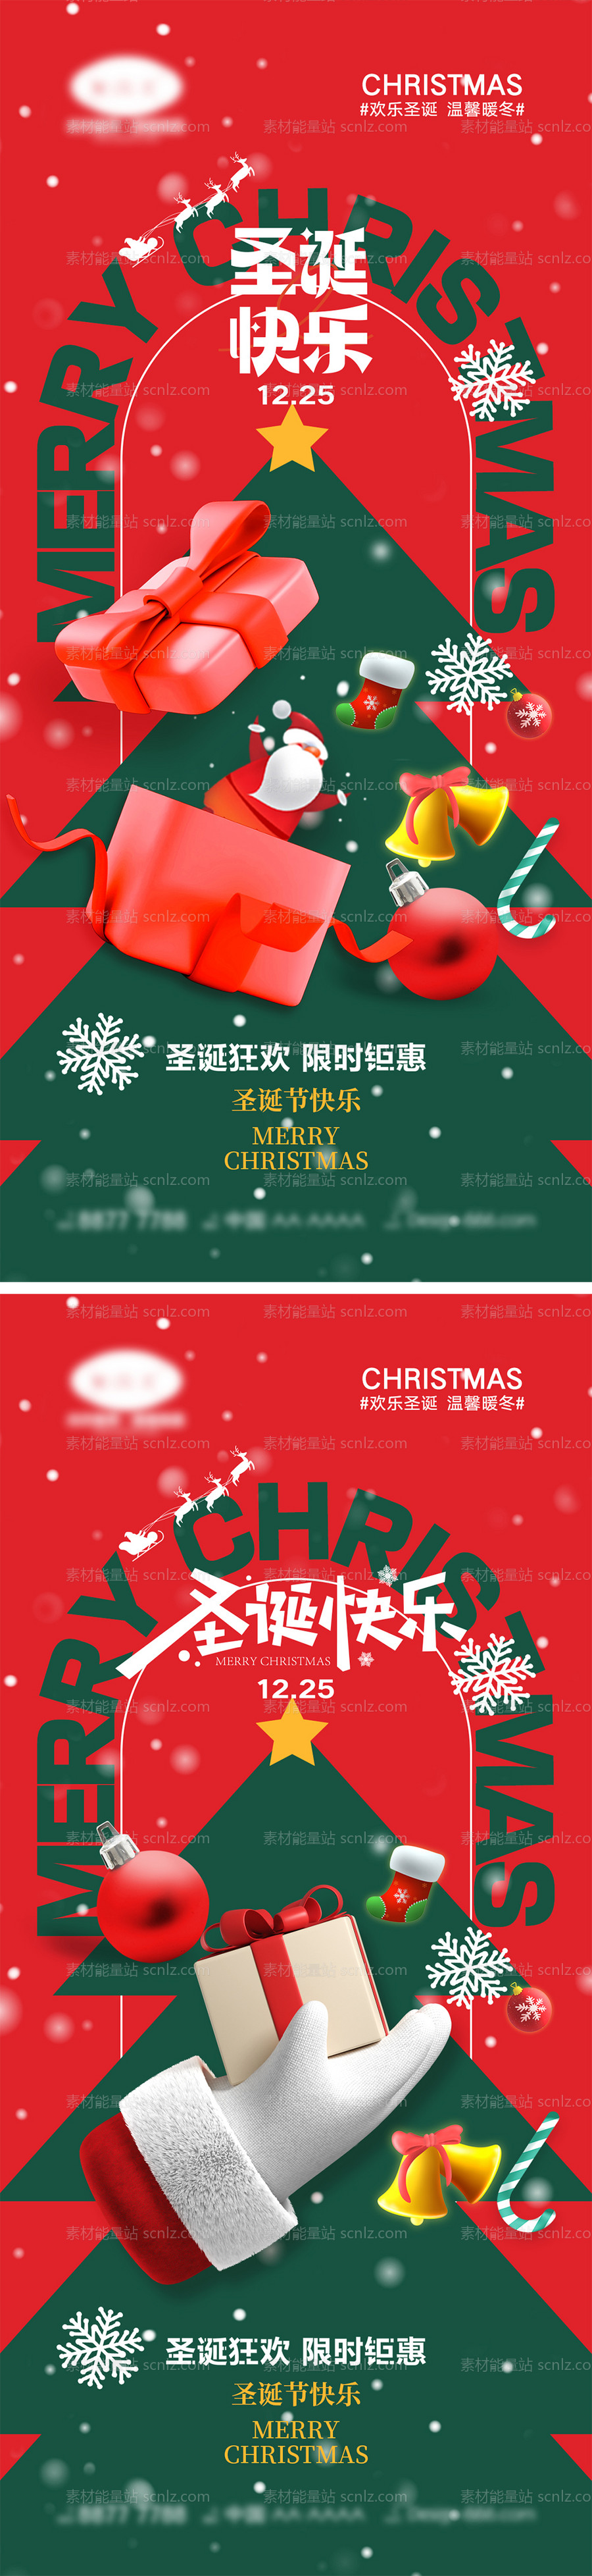 素材能量站-圣诞节海报